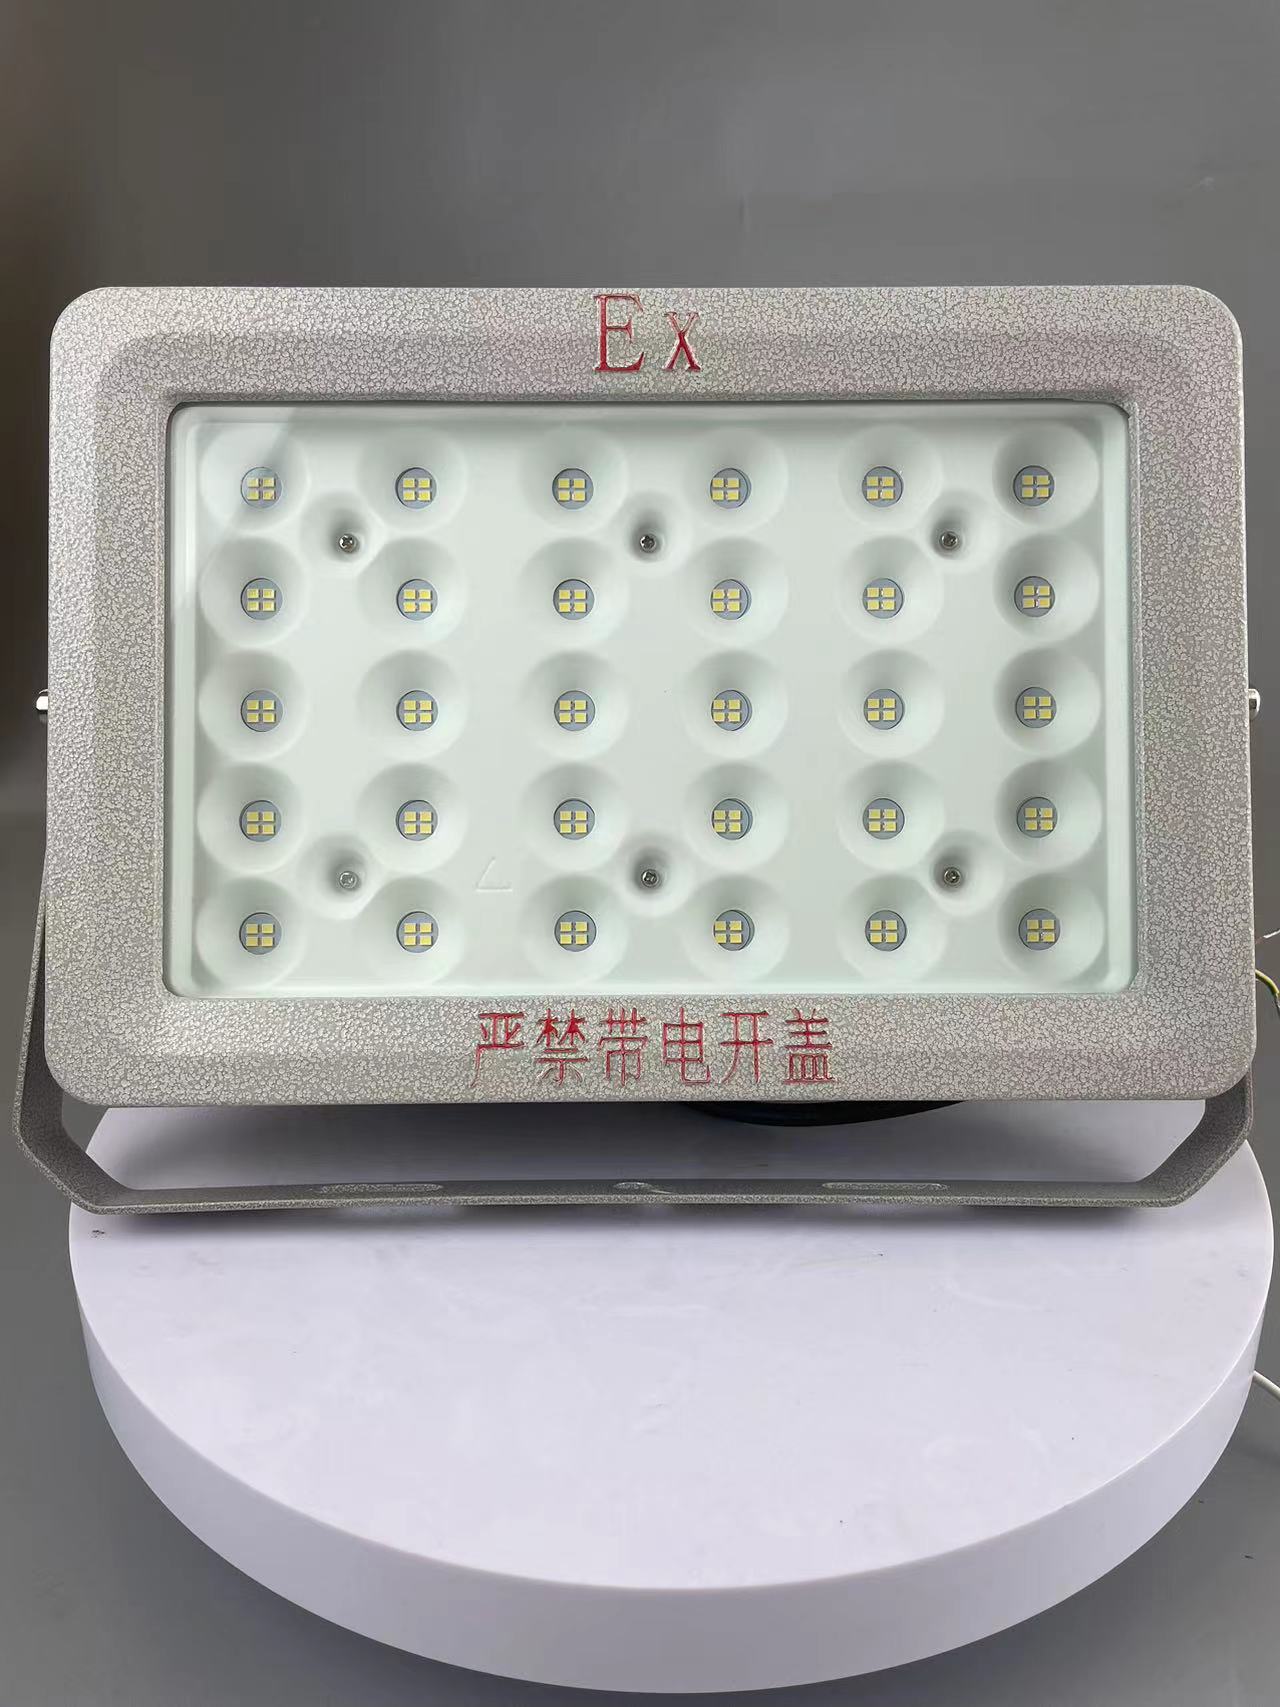 HRD57-III型LED节能灯华荣免维护系列防爆节能灯进口大功率LED光源